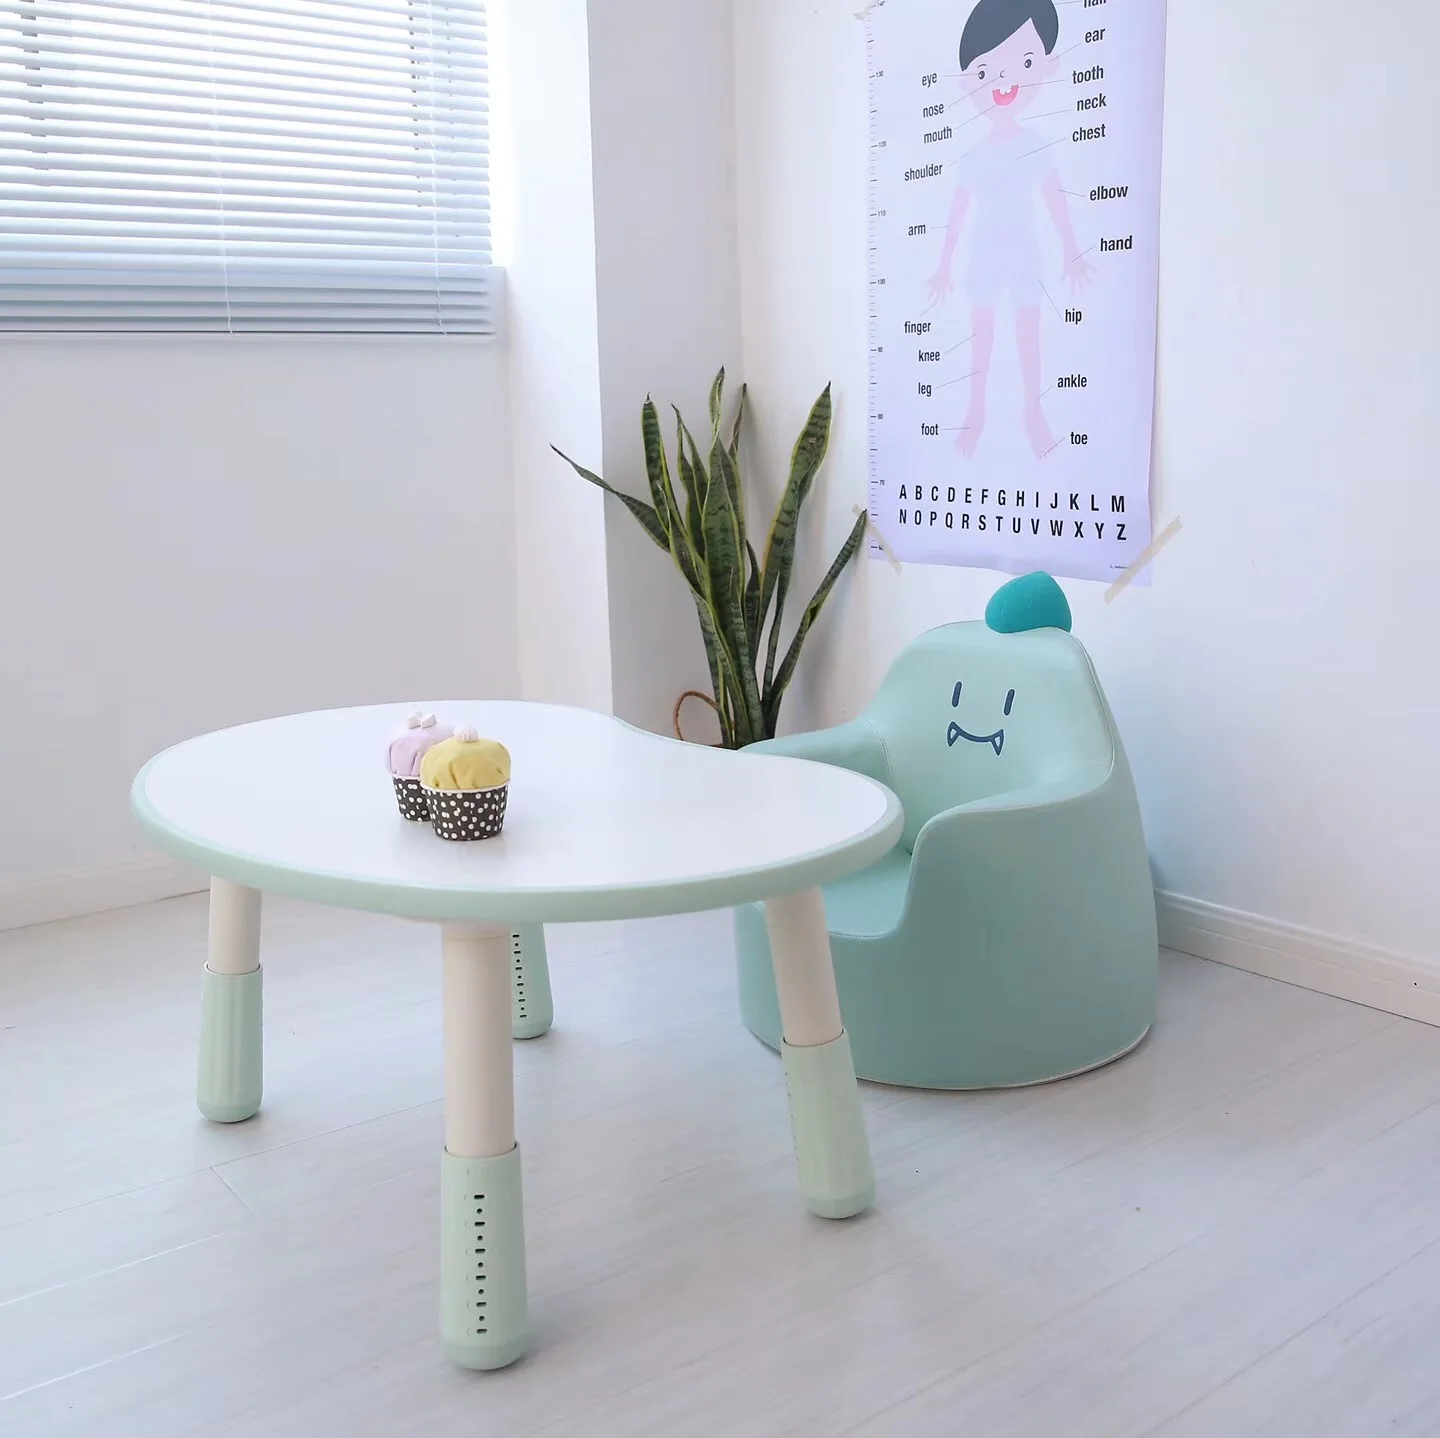 Луи Мода детские столы корейский высота и вращение милый кролик динозавр диван соответствующий стол для чтения детей для учебы - Цвет: S2